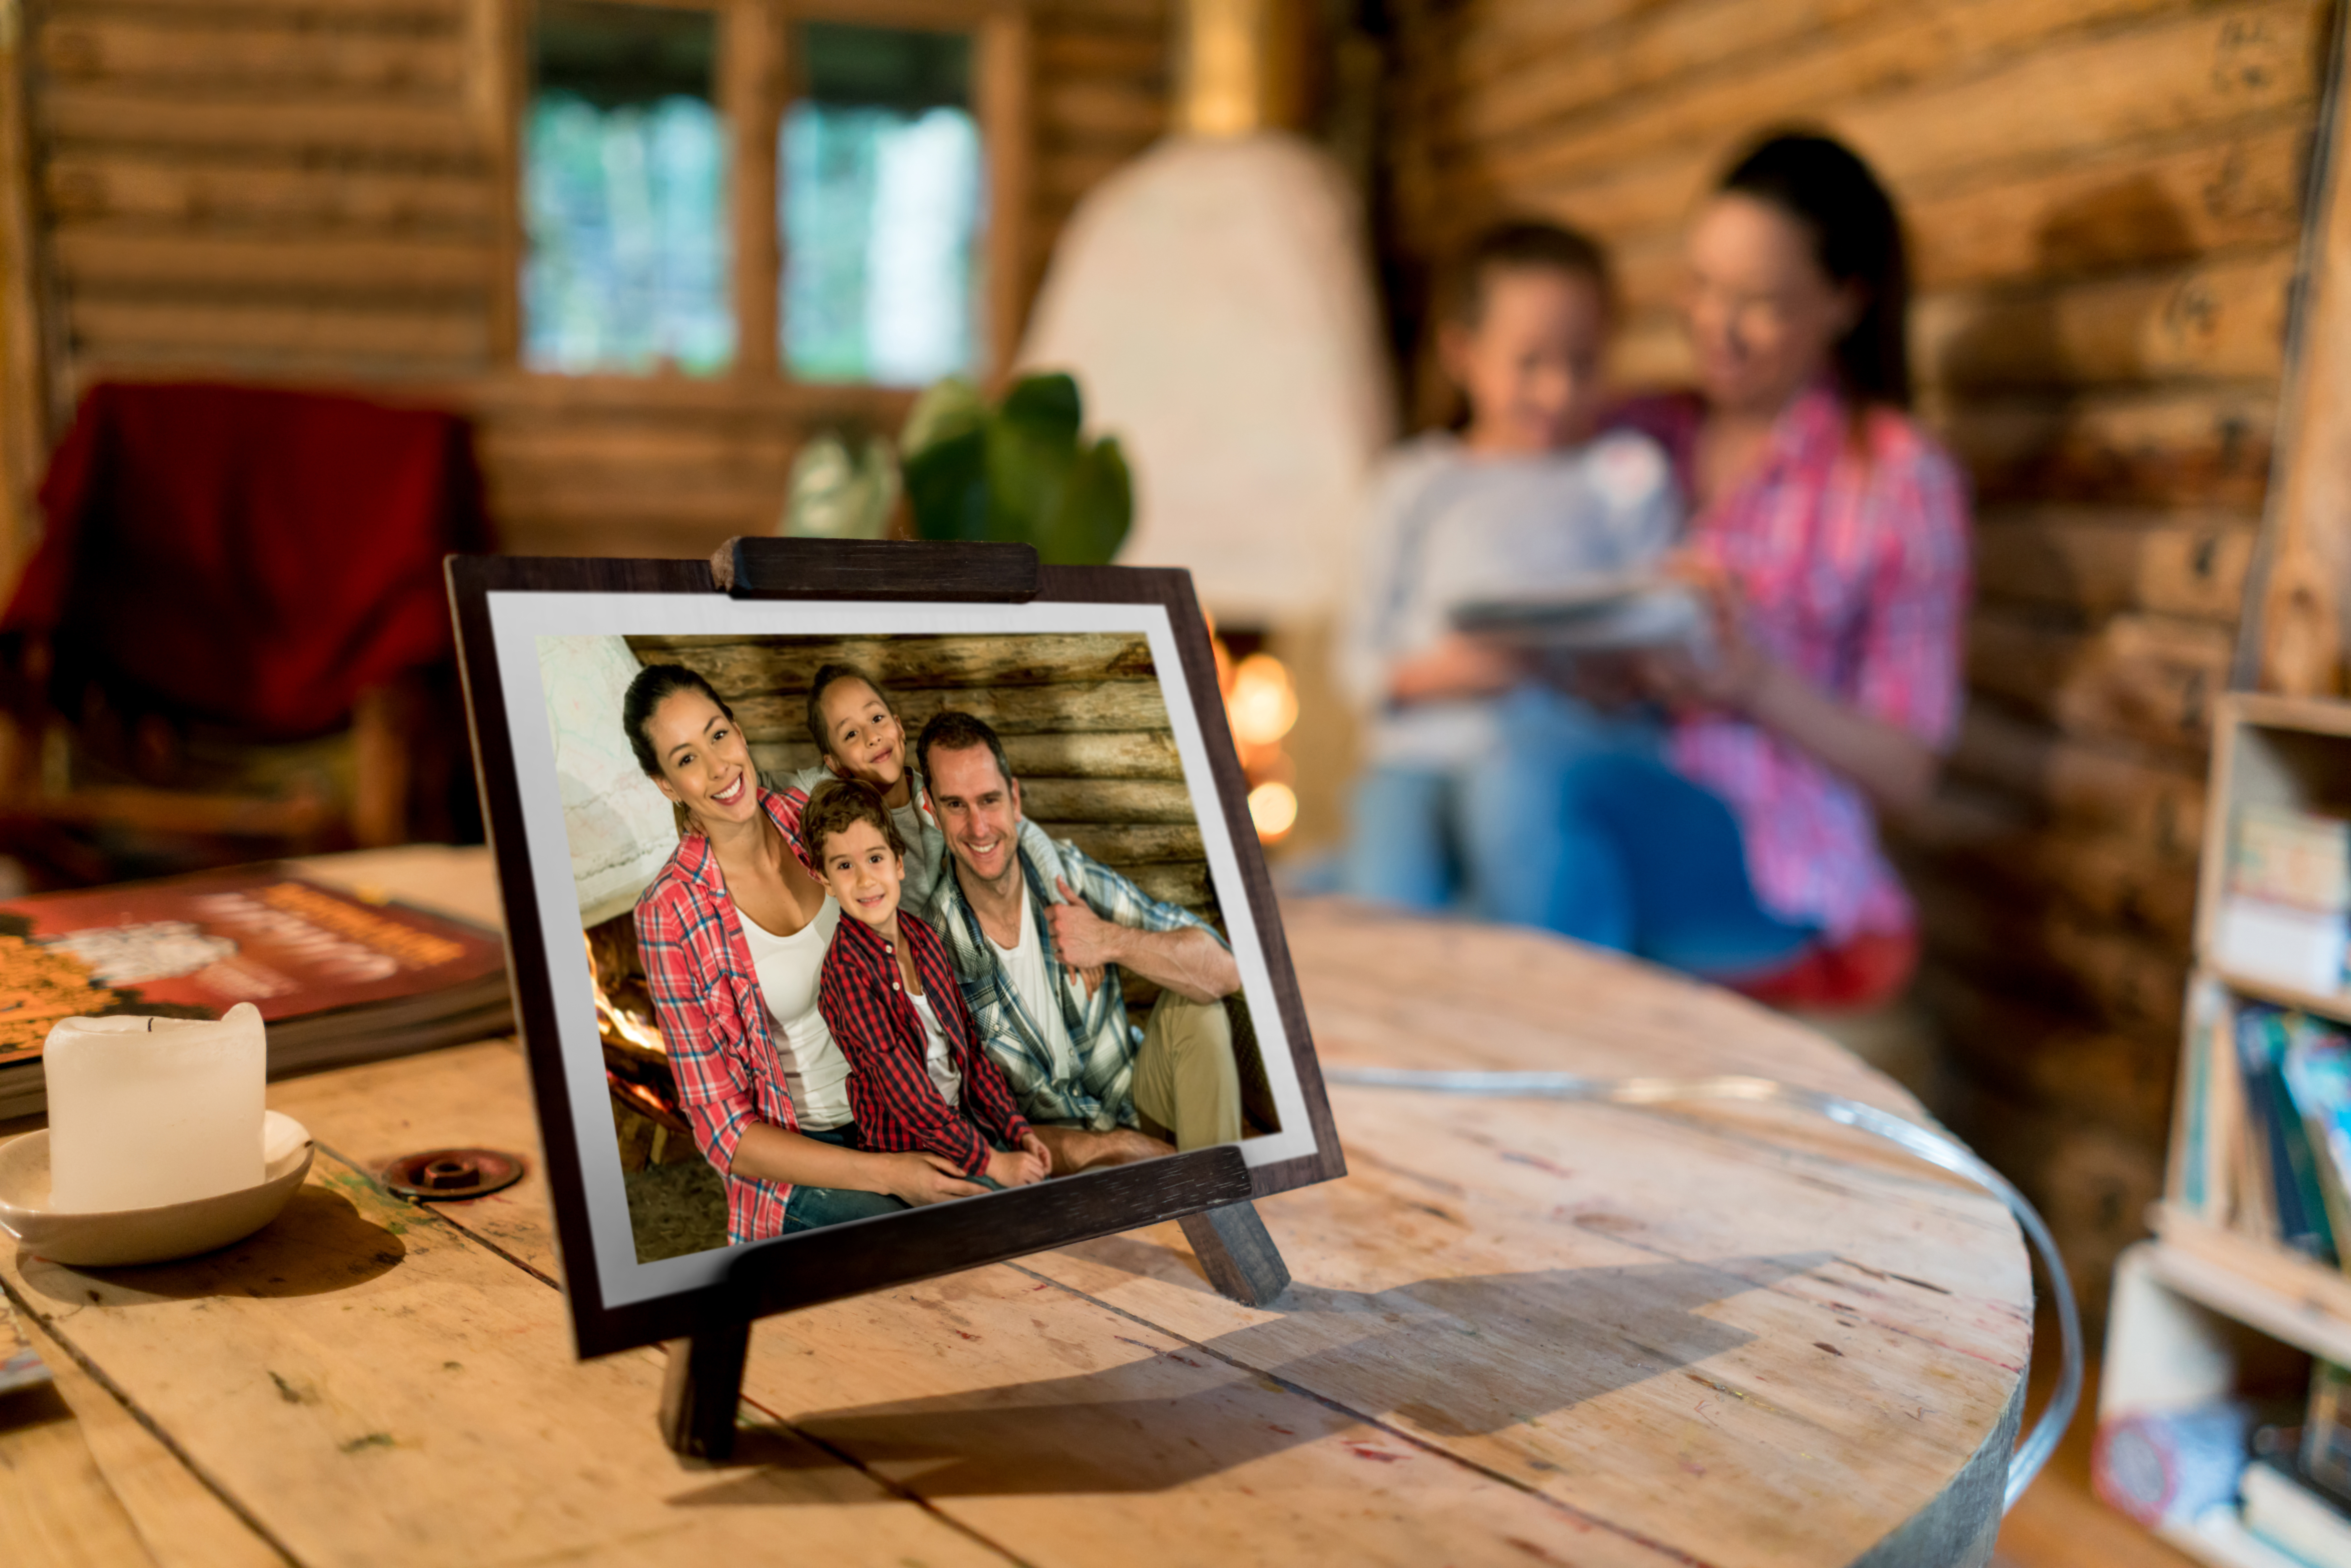 Ein schönes Familienfoto in einem Rahmen auf einem Tisch | Quelle: Getty Images